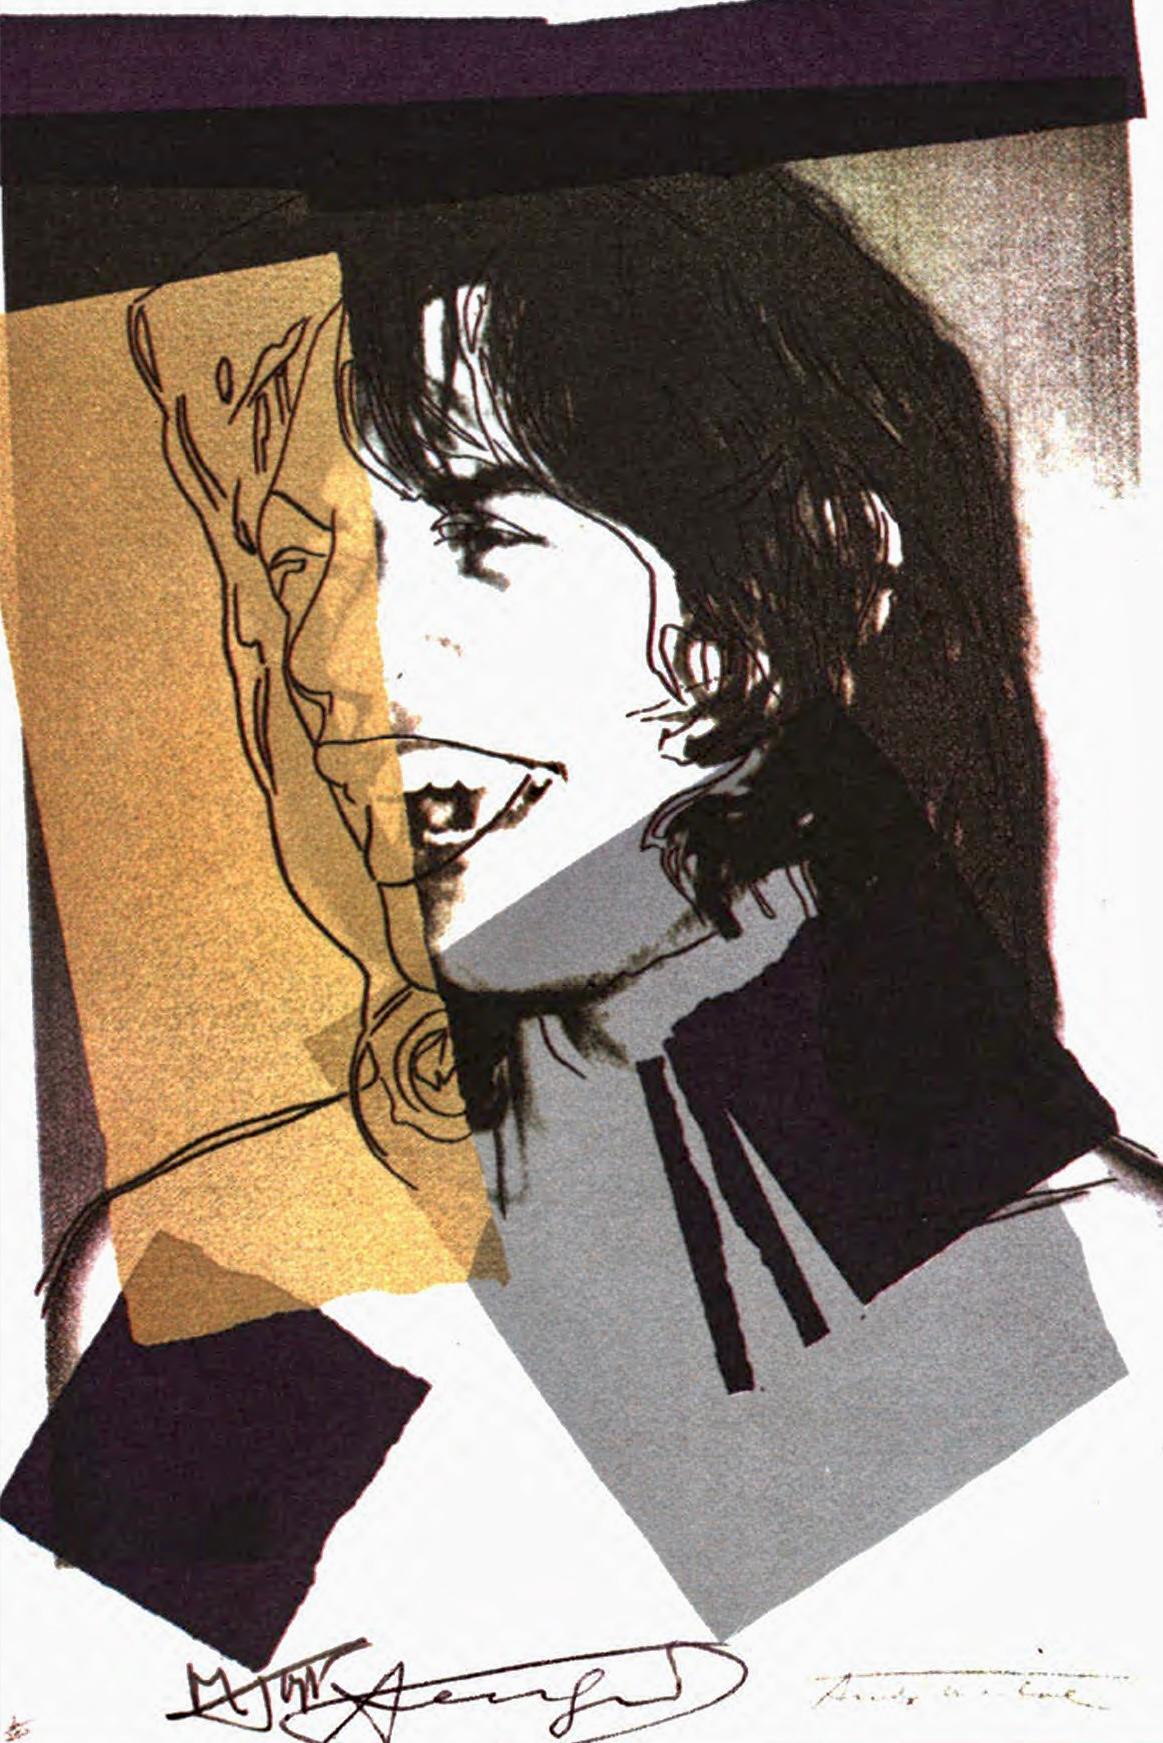 Andy Warhol Mick Jagger Leo Castelli gallery 1975 :

Un superbe faire-part Andy Warhol Mick Jagger signé à la main par Warhol au marqueur en bas au centre (entre une signature imprimée de Jagger et de Warhol). Cet ouvrage a été publié par Castelli